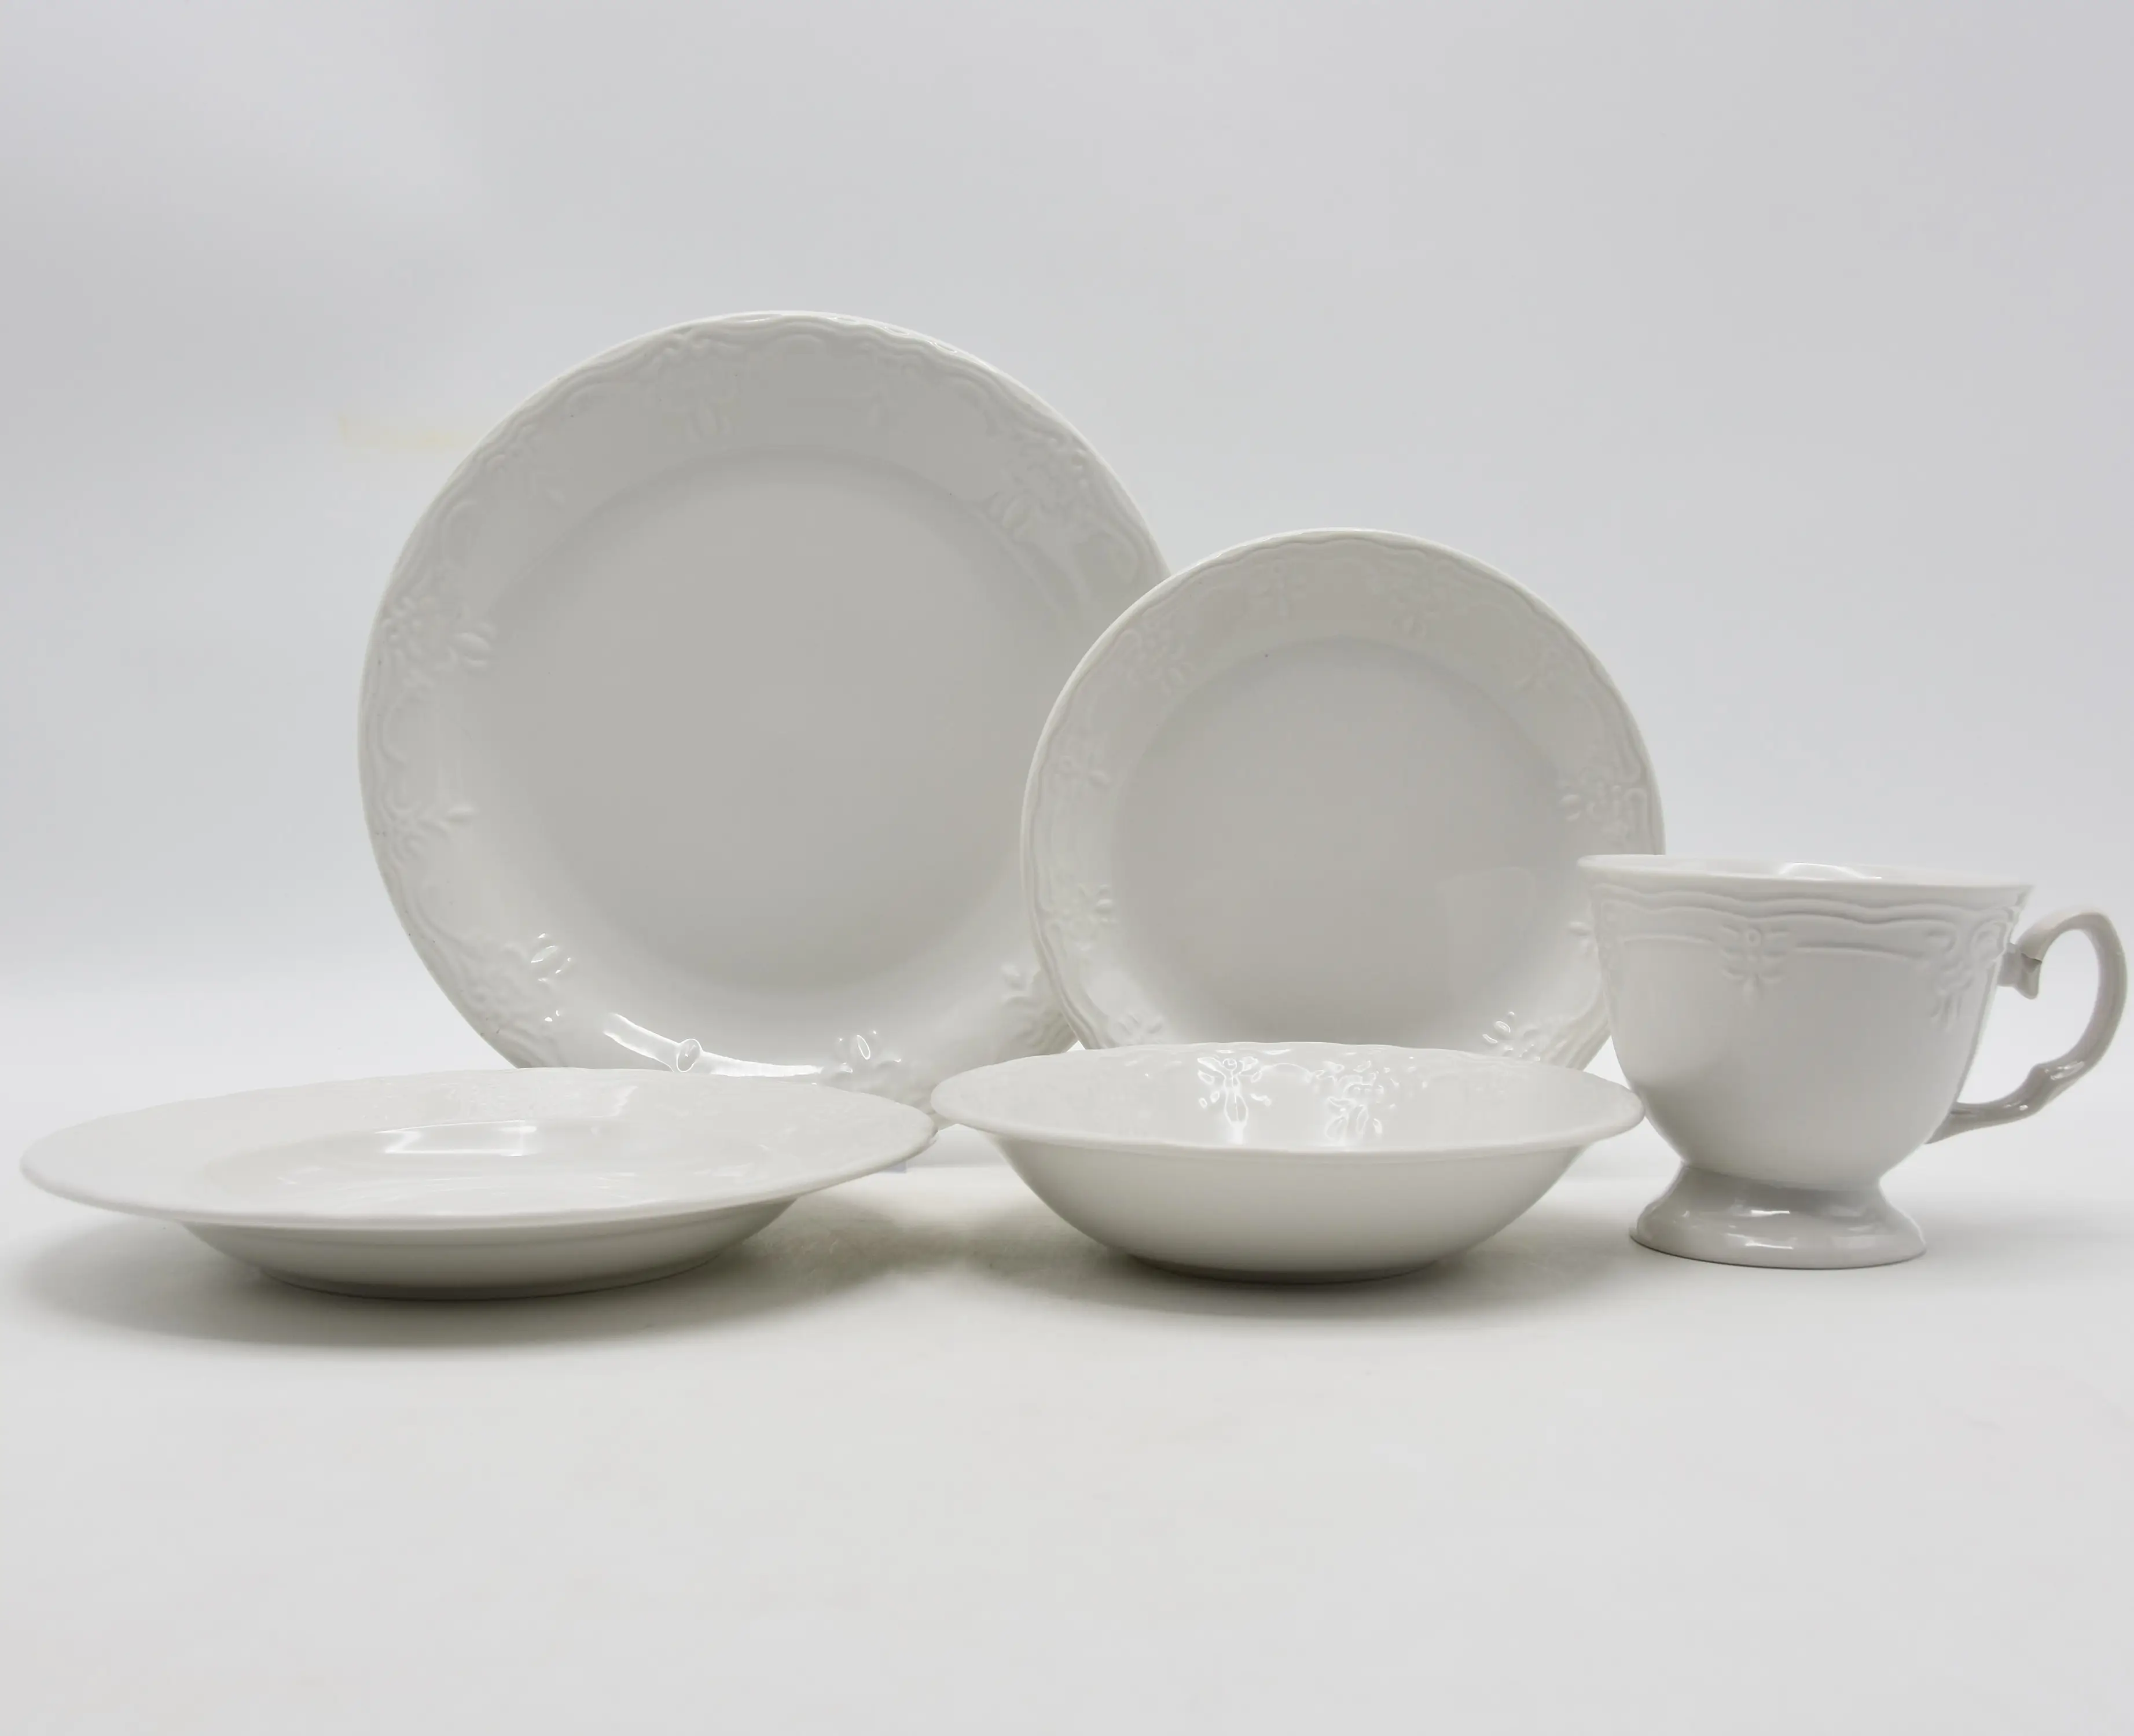 Juego de vajilla de cerámica de cinco piezas con relieve de vides blancas puras e impecables europeas